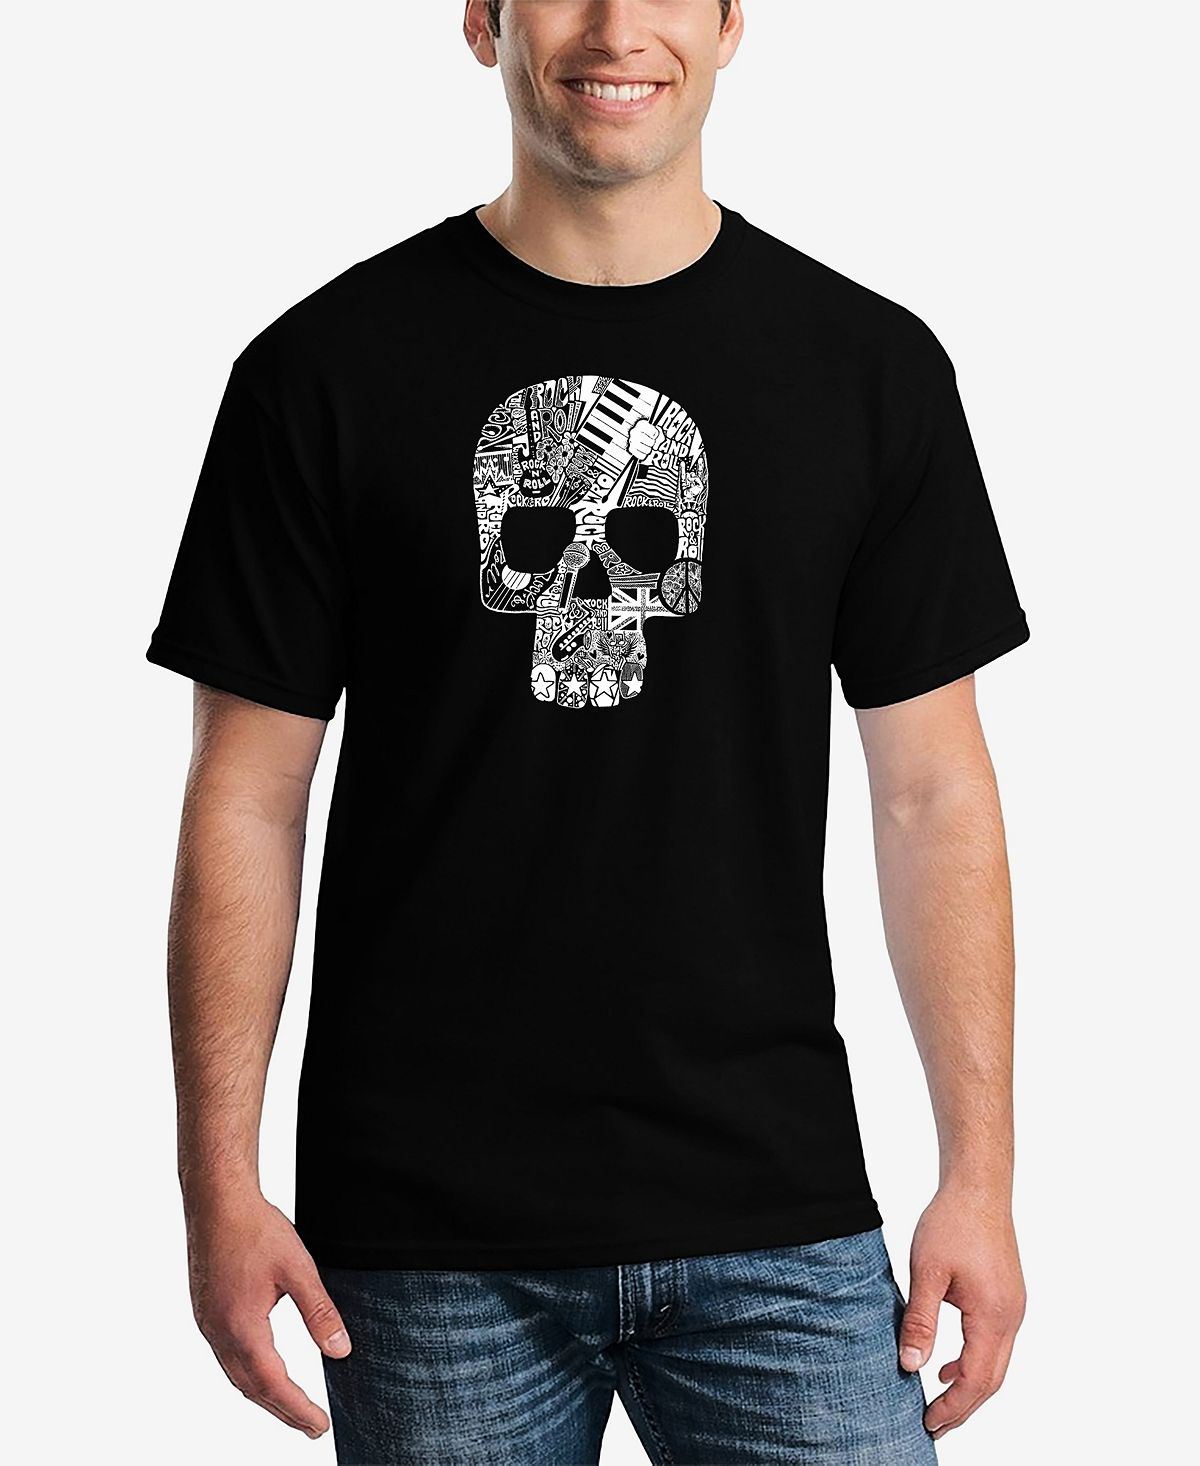 счастливая жизнь старченко н н Мужская футболка с принтом Word Art в стиле рок-н-ролл и черепом LA Pop Art